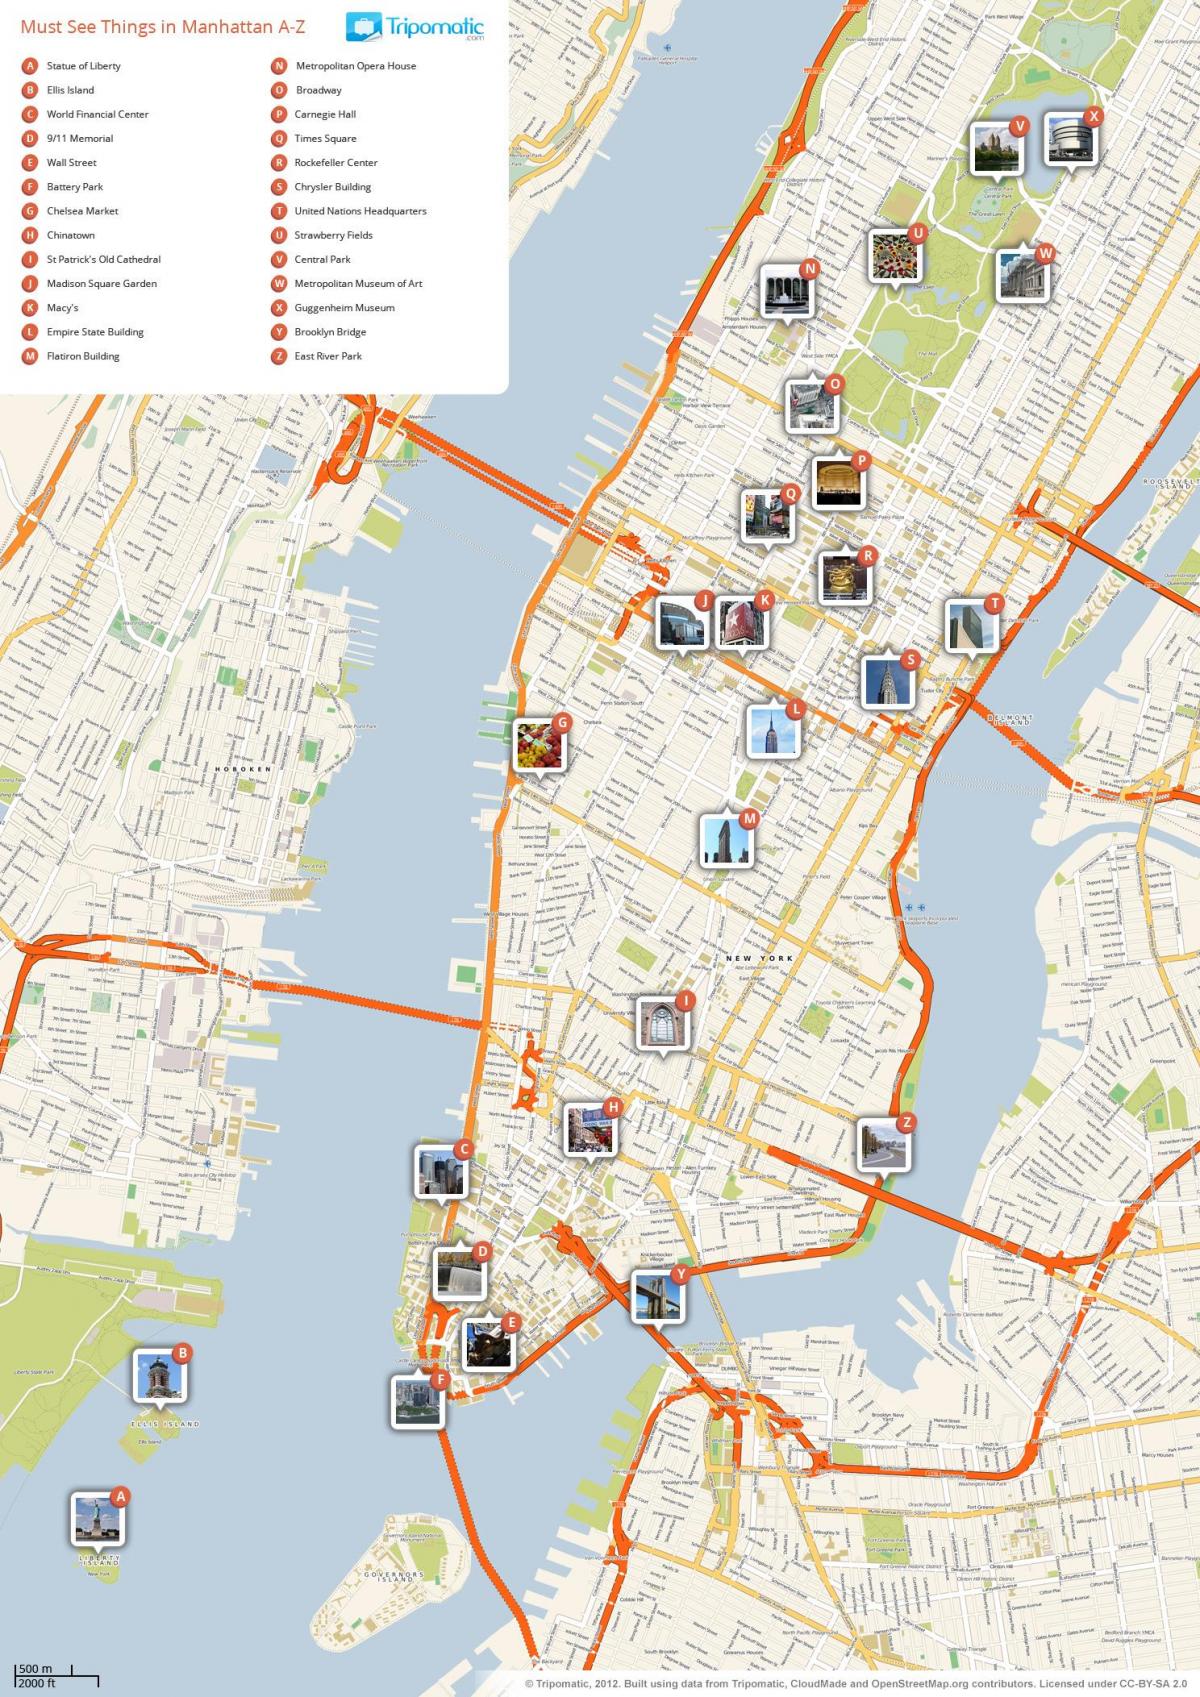 מפה של מנהטן מציג אטרקציות תיירותיות